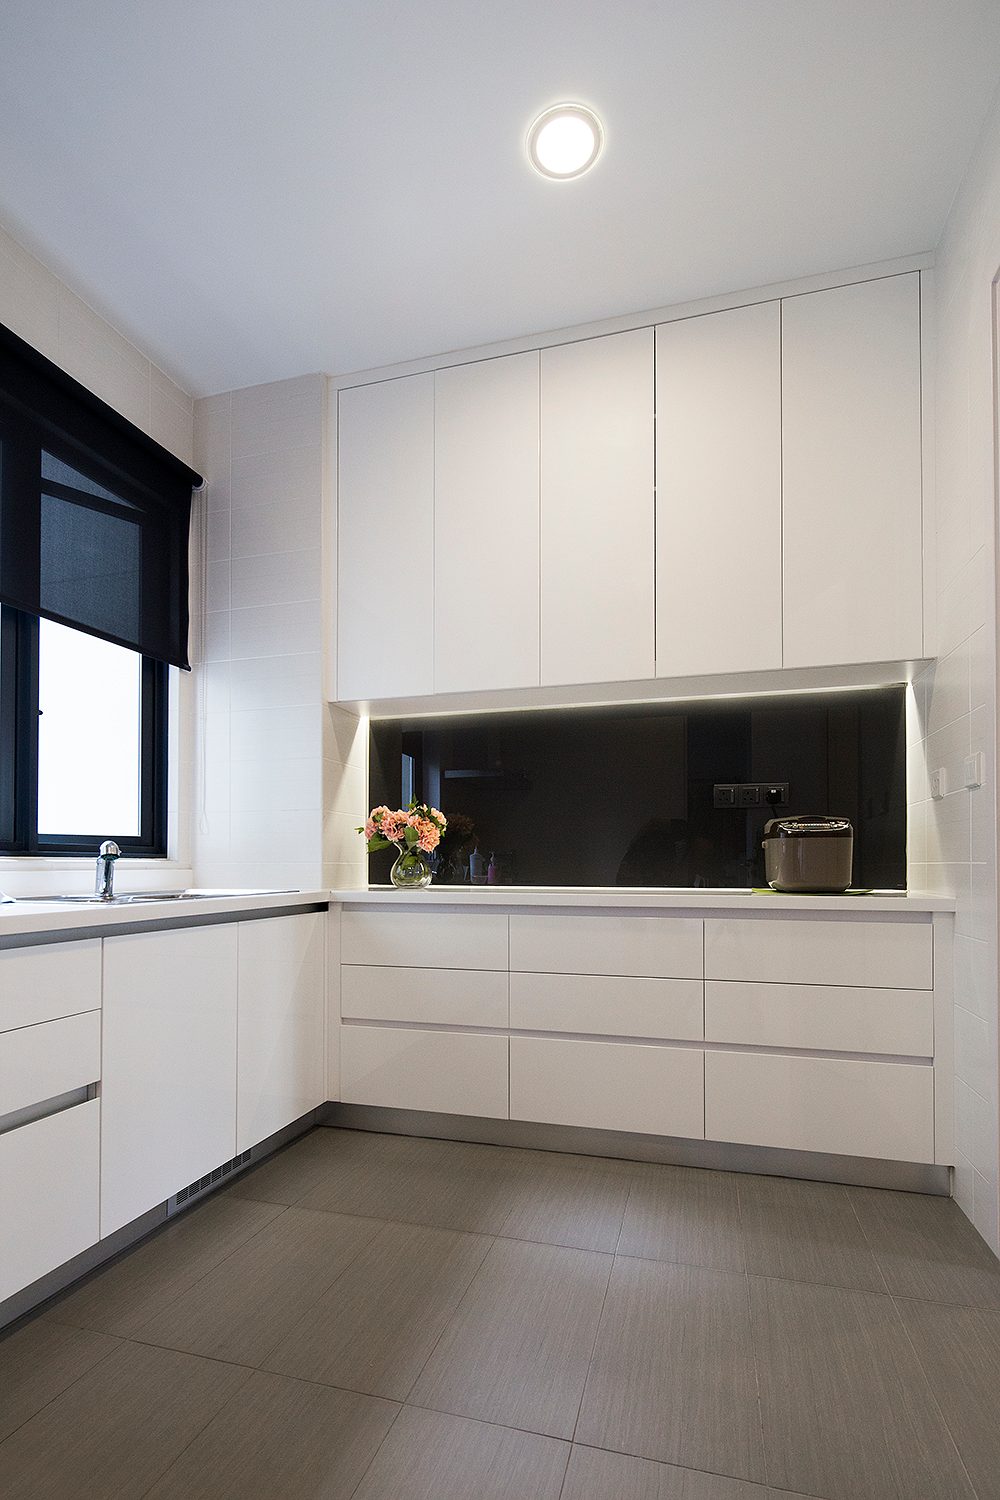 Dry kitchen design for Condominium in North Kiara. Project by: Box Creative